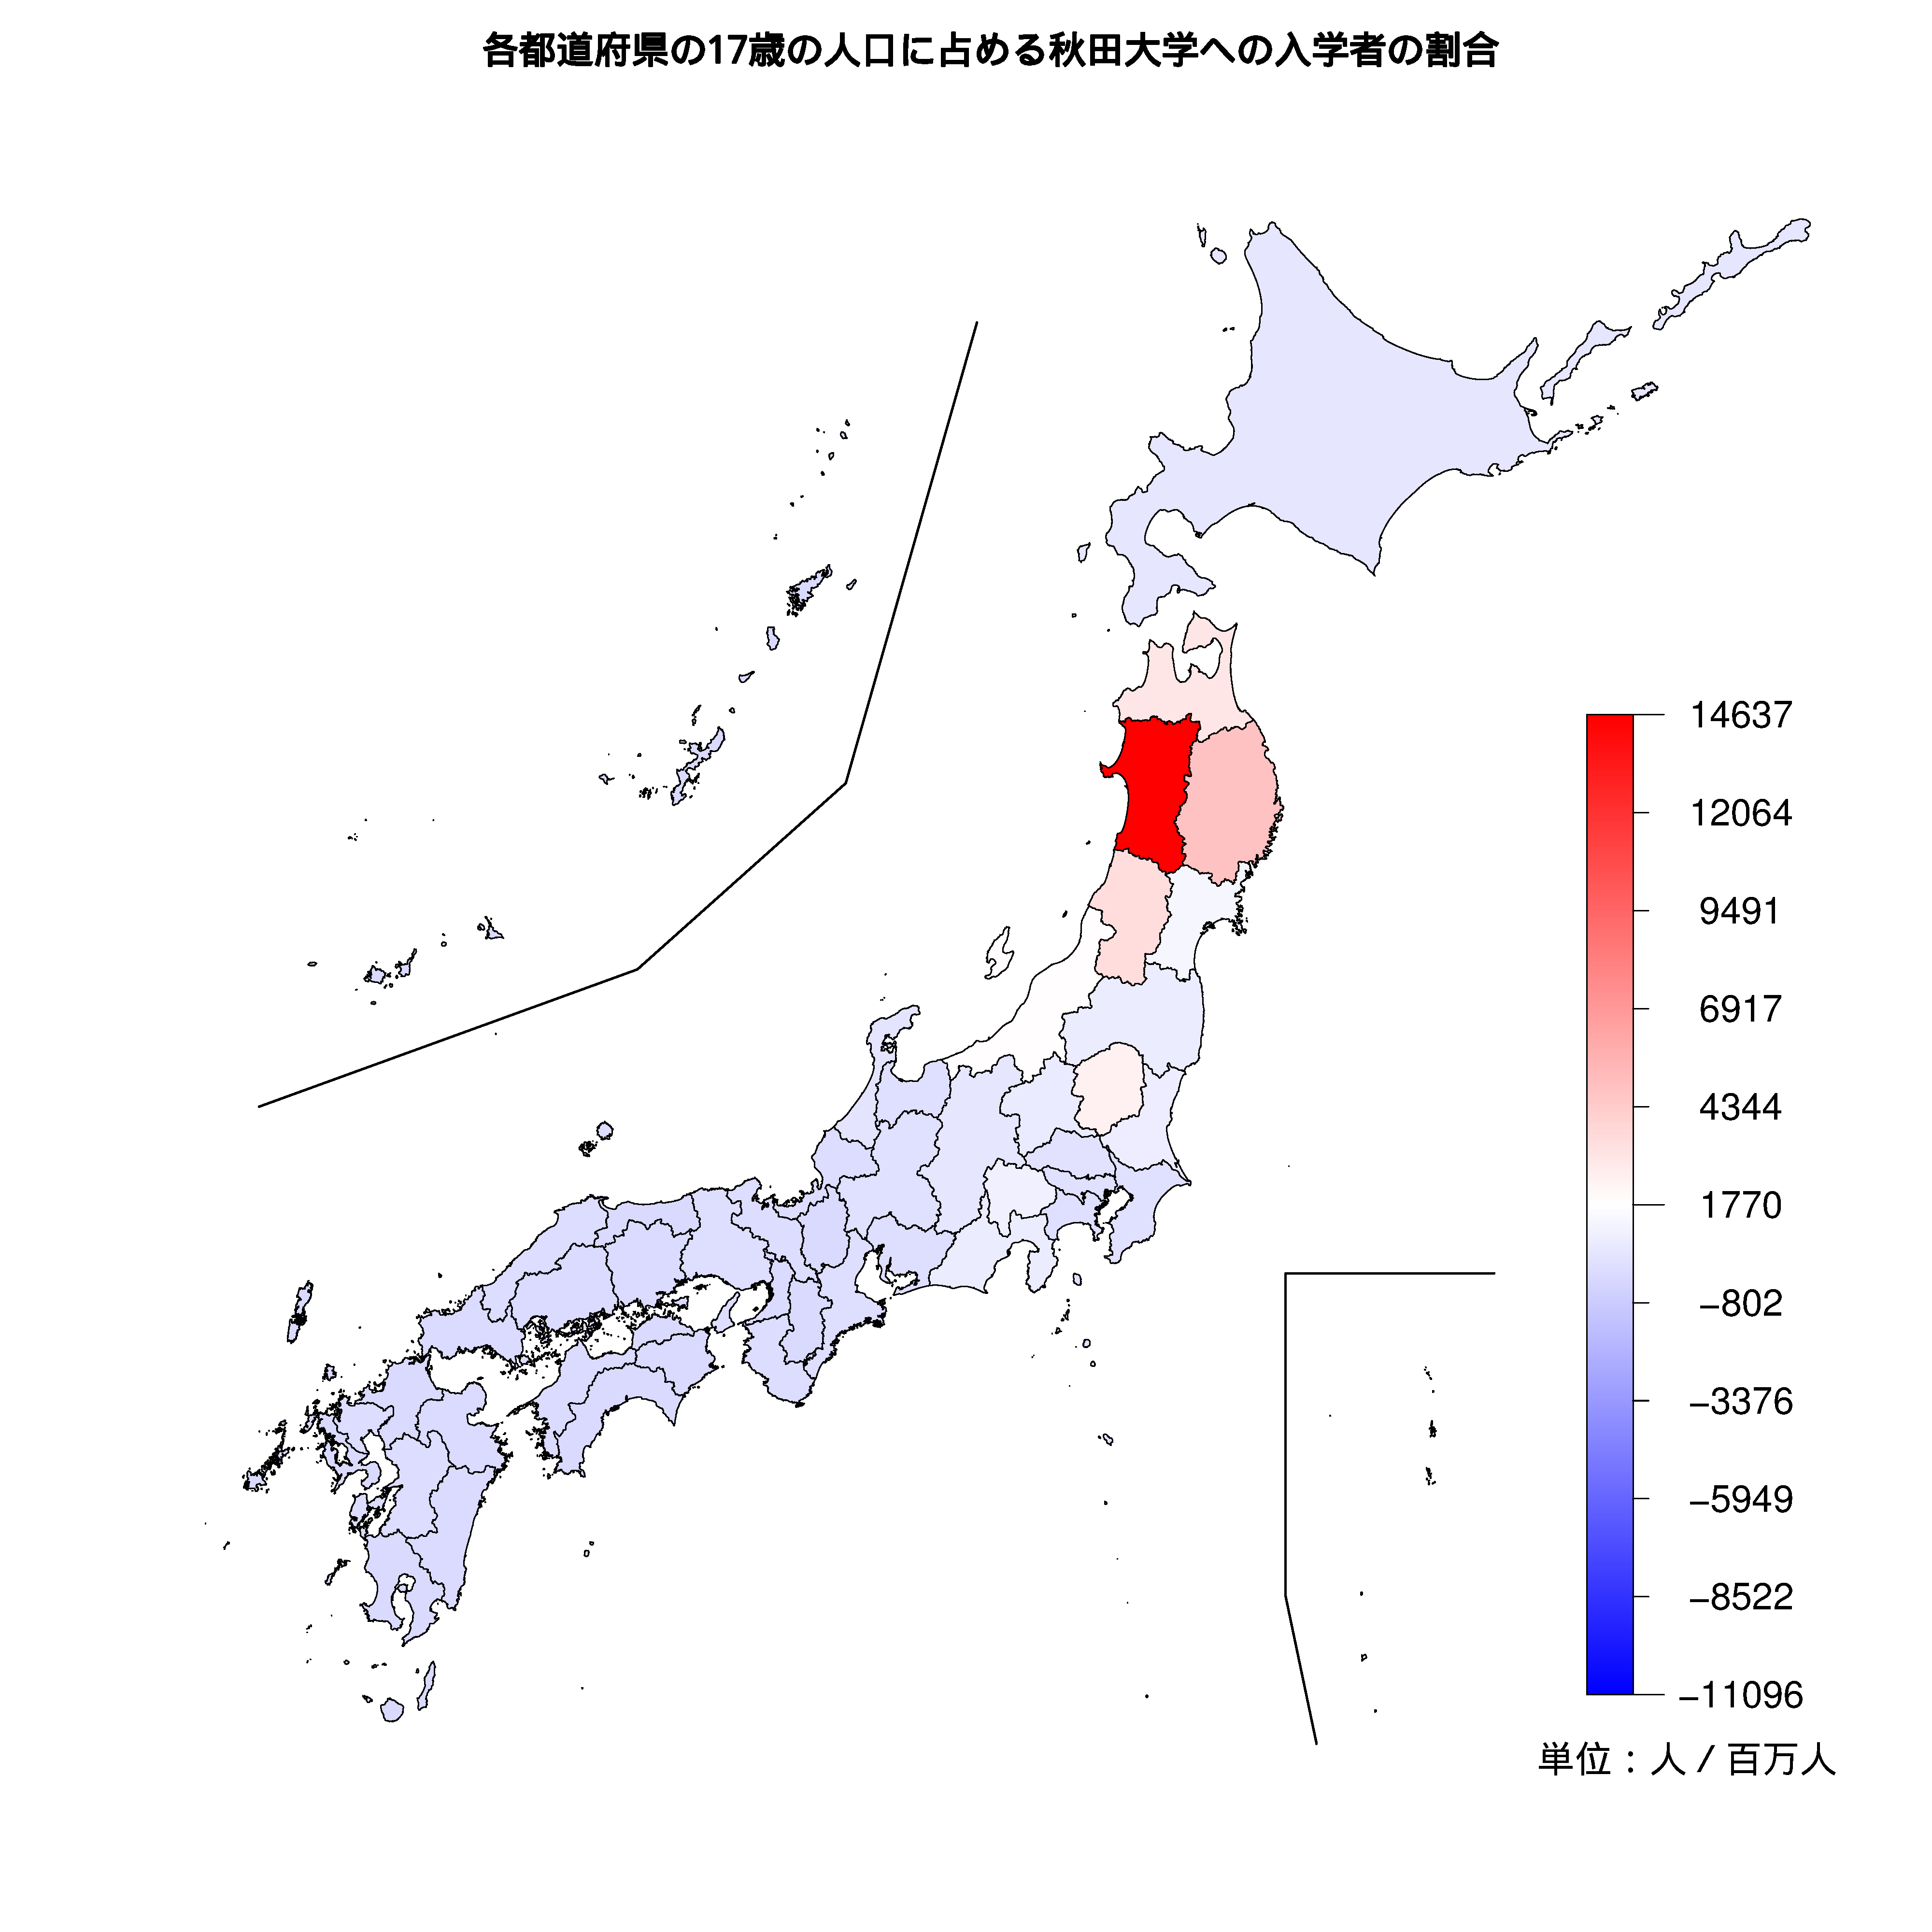 秋田大学への入学者が多い都道府県の色分け地図